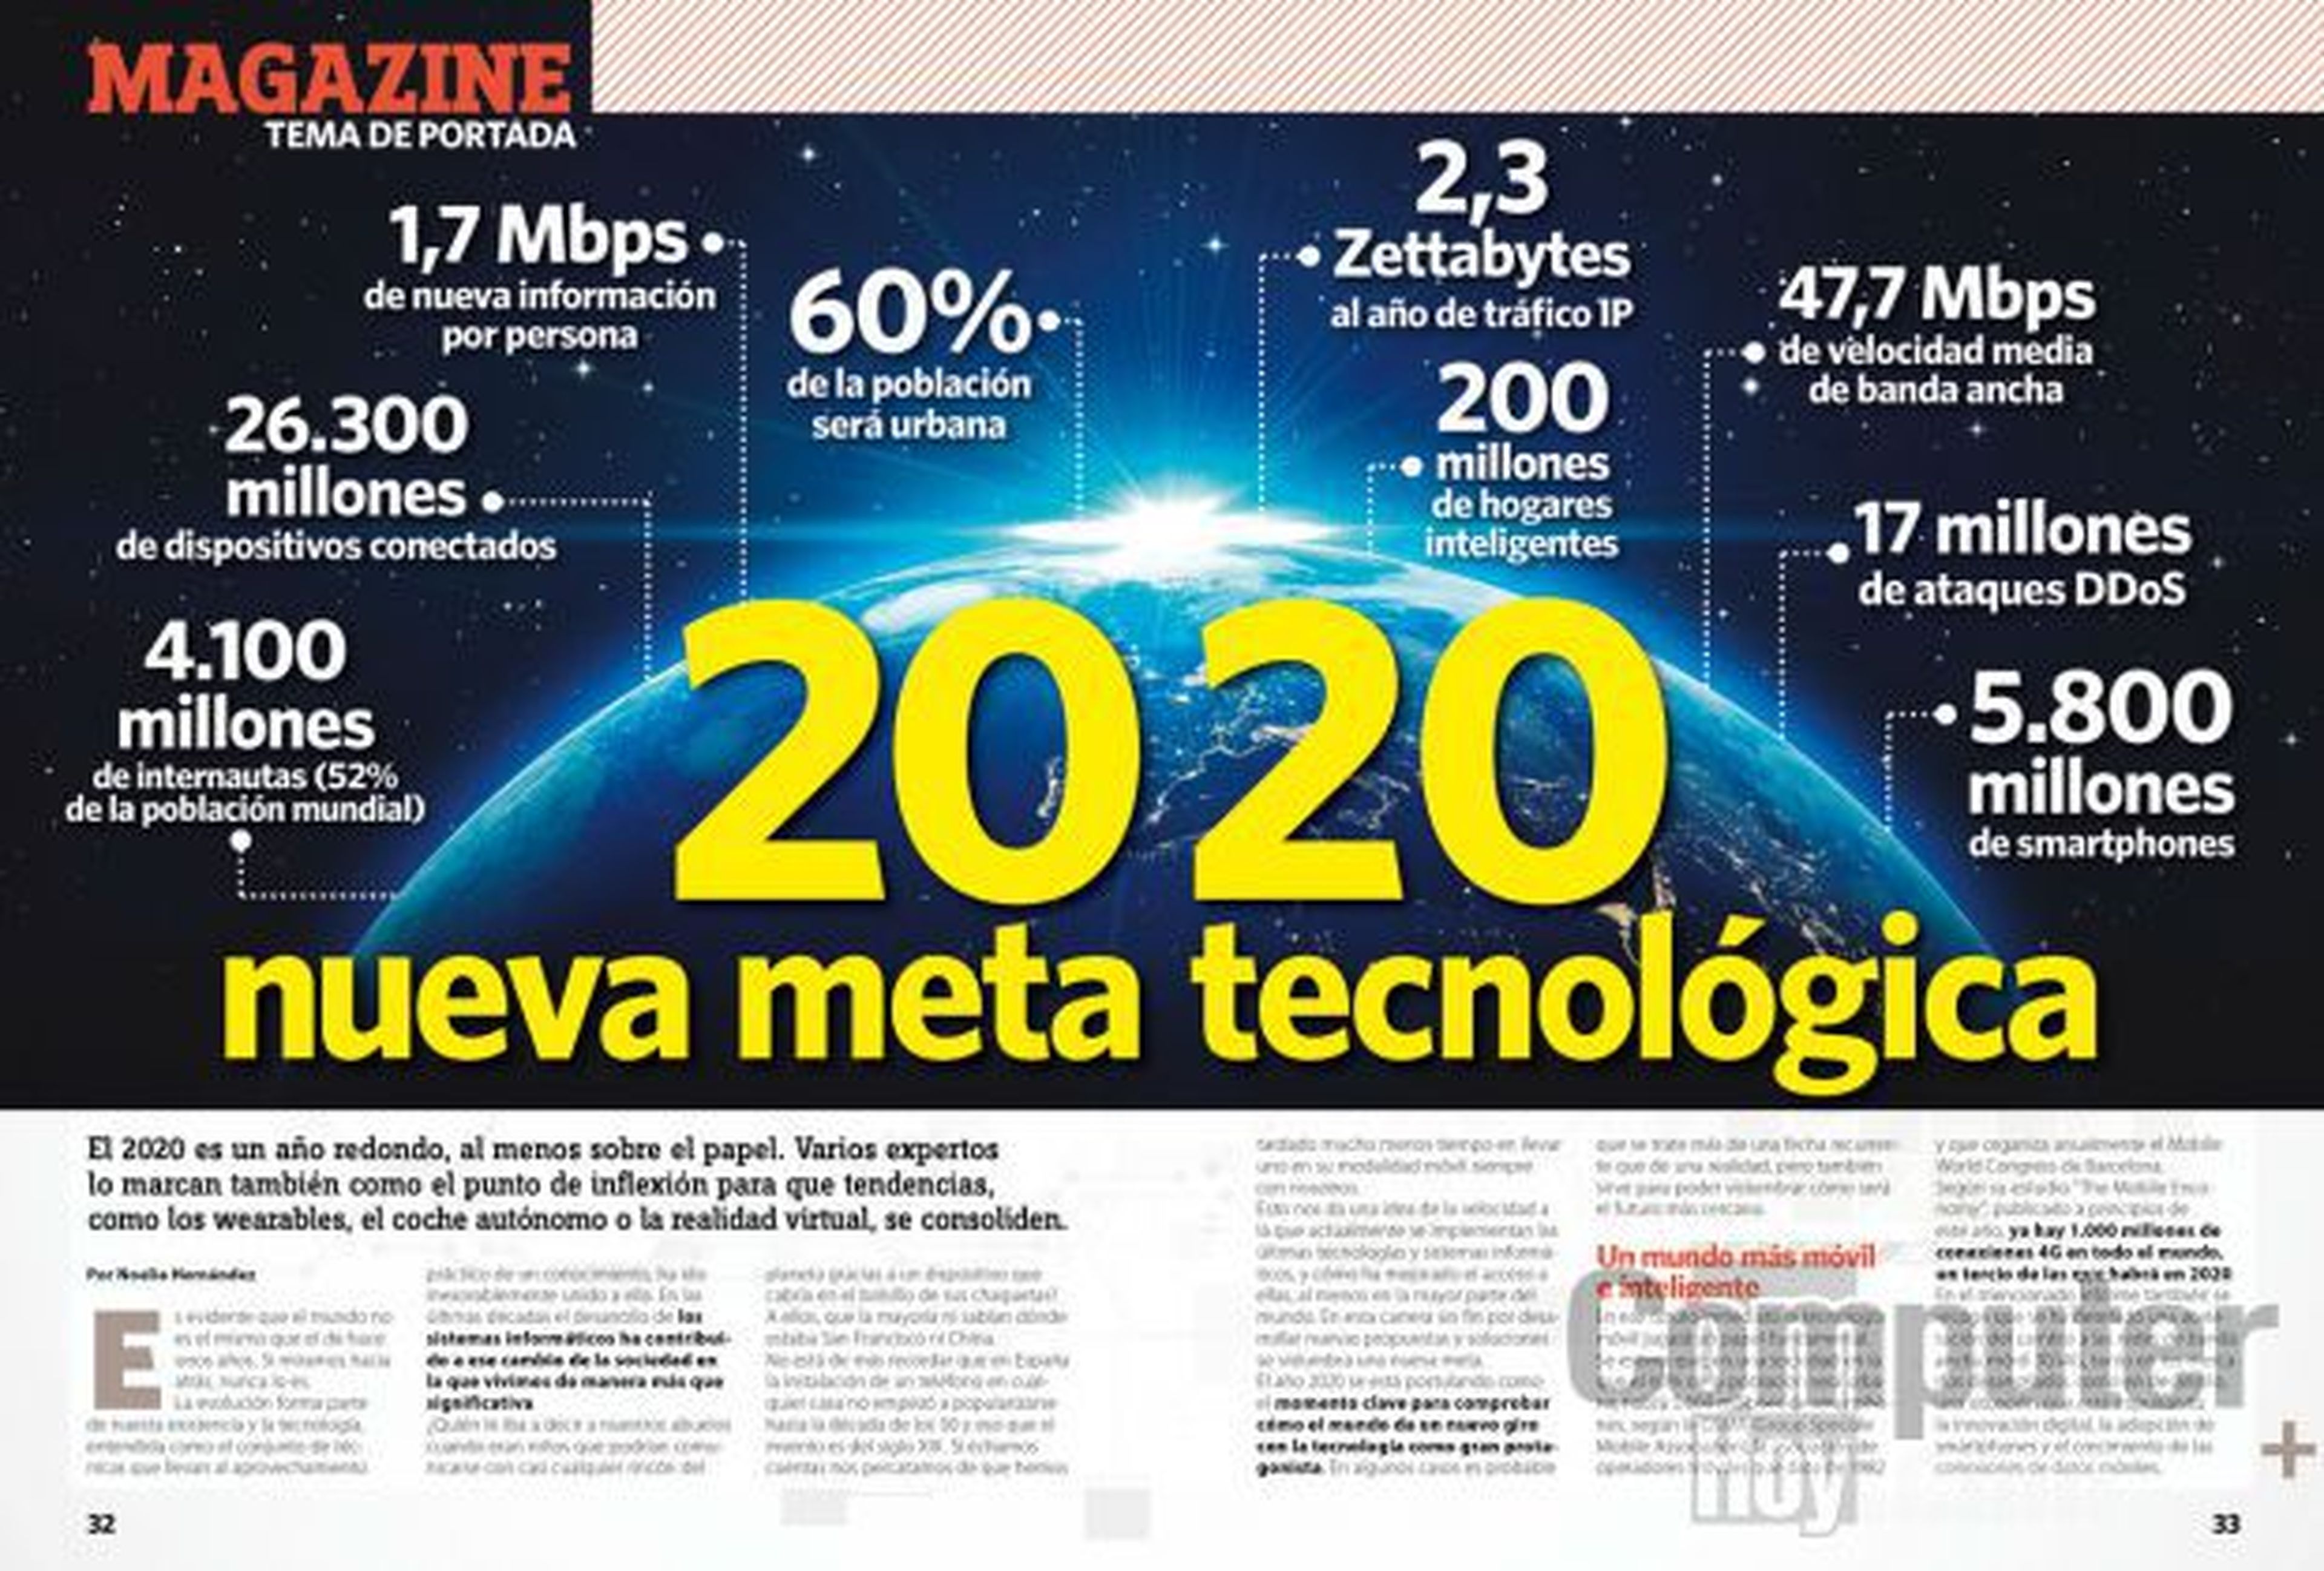 2020: nueva meta tecnológica